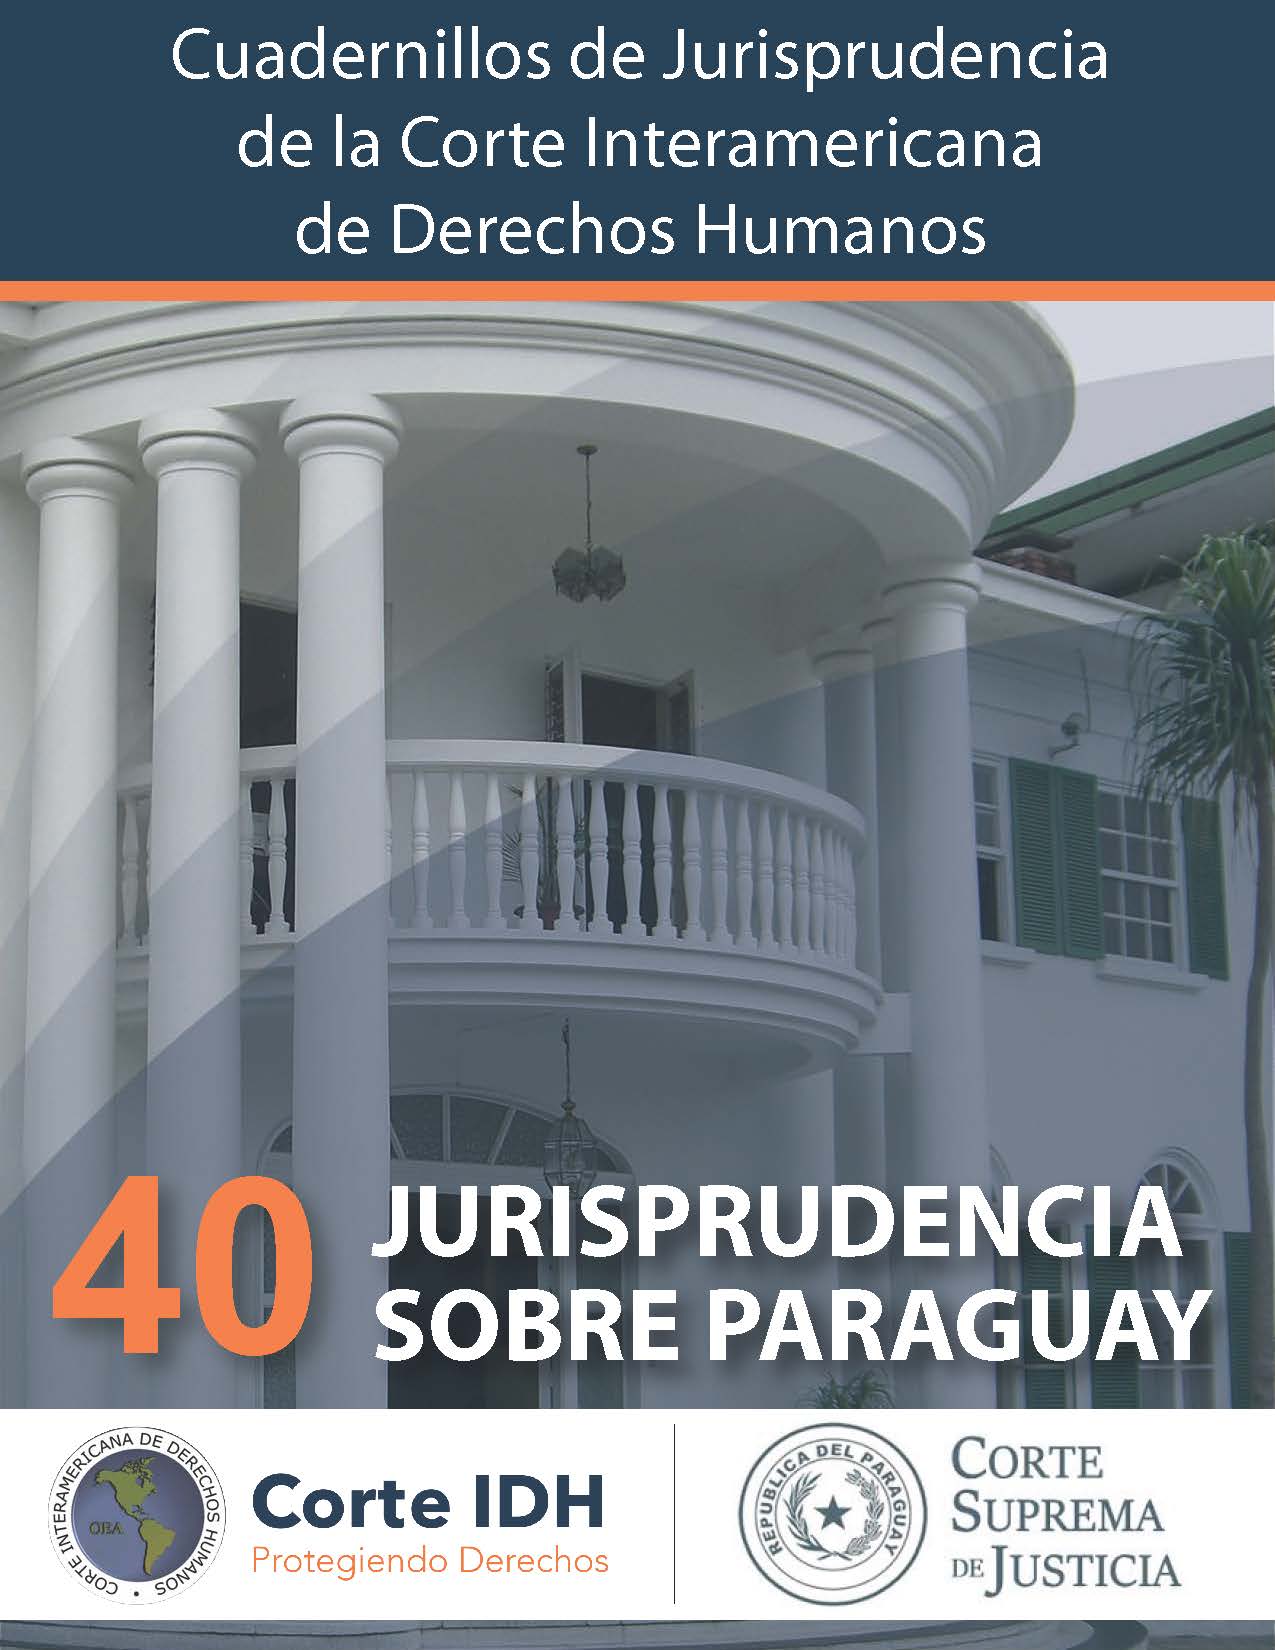 Cuadernillo de Jurisprudencia N° 40: Jurisprudencia sobre Paraguay